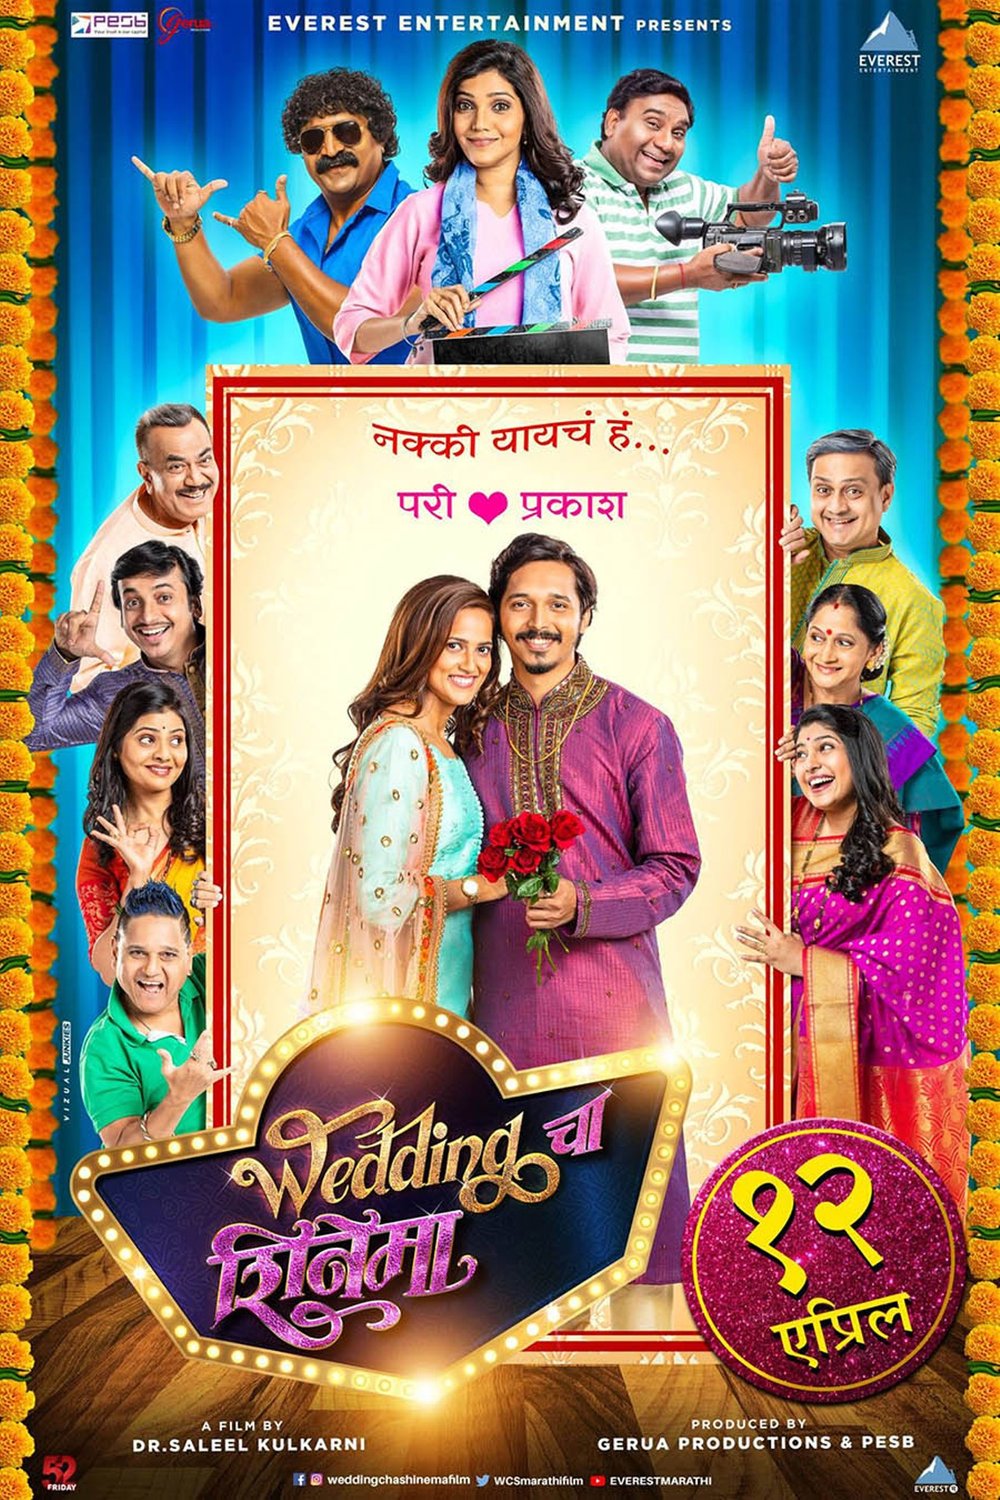 Marathi poster of the movie Wedding Cha Shinema